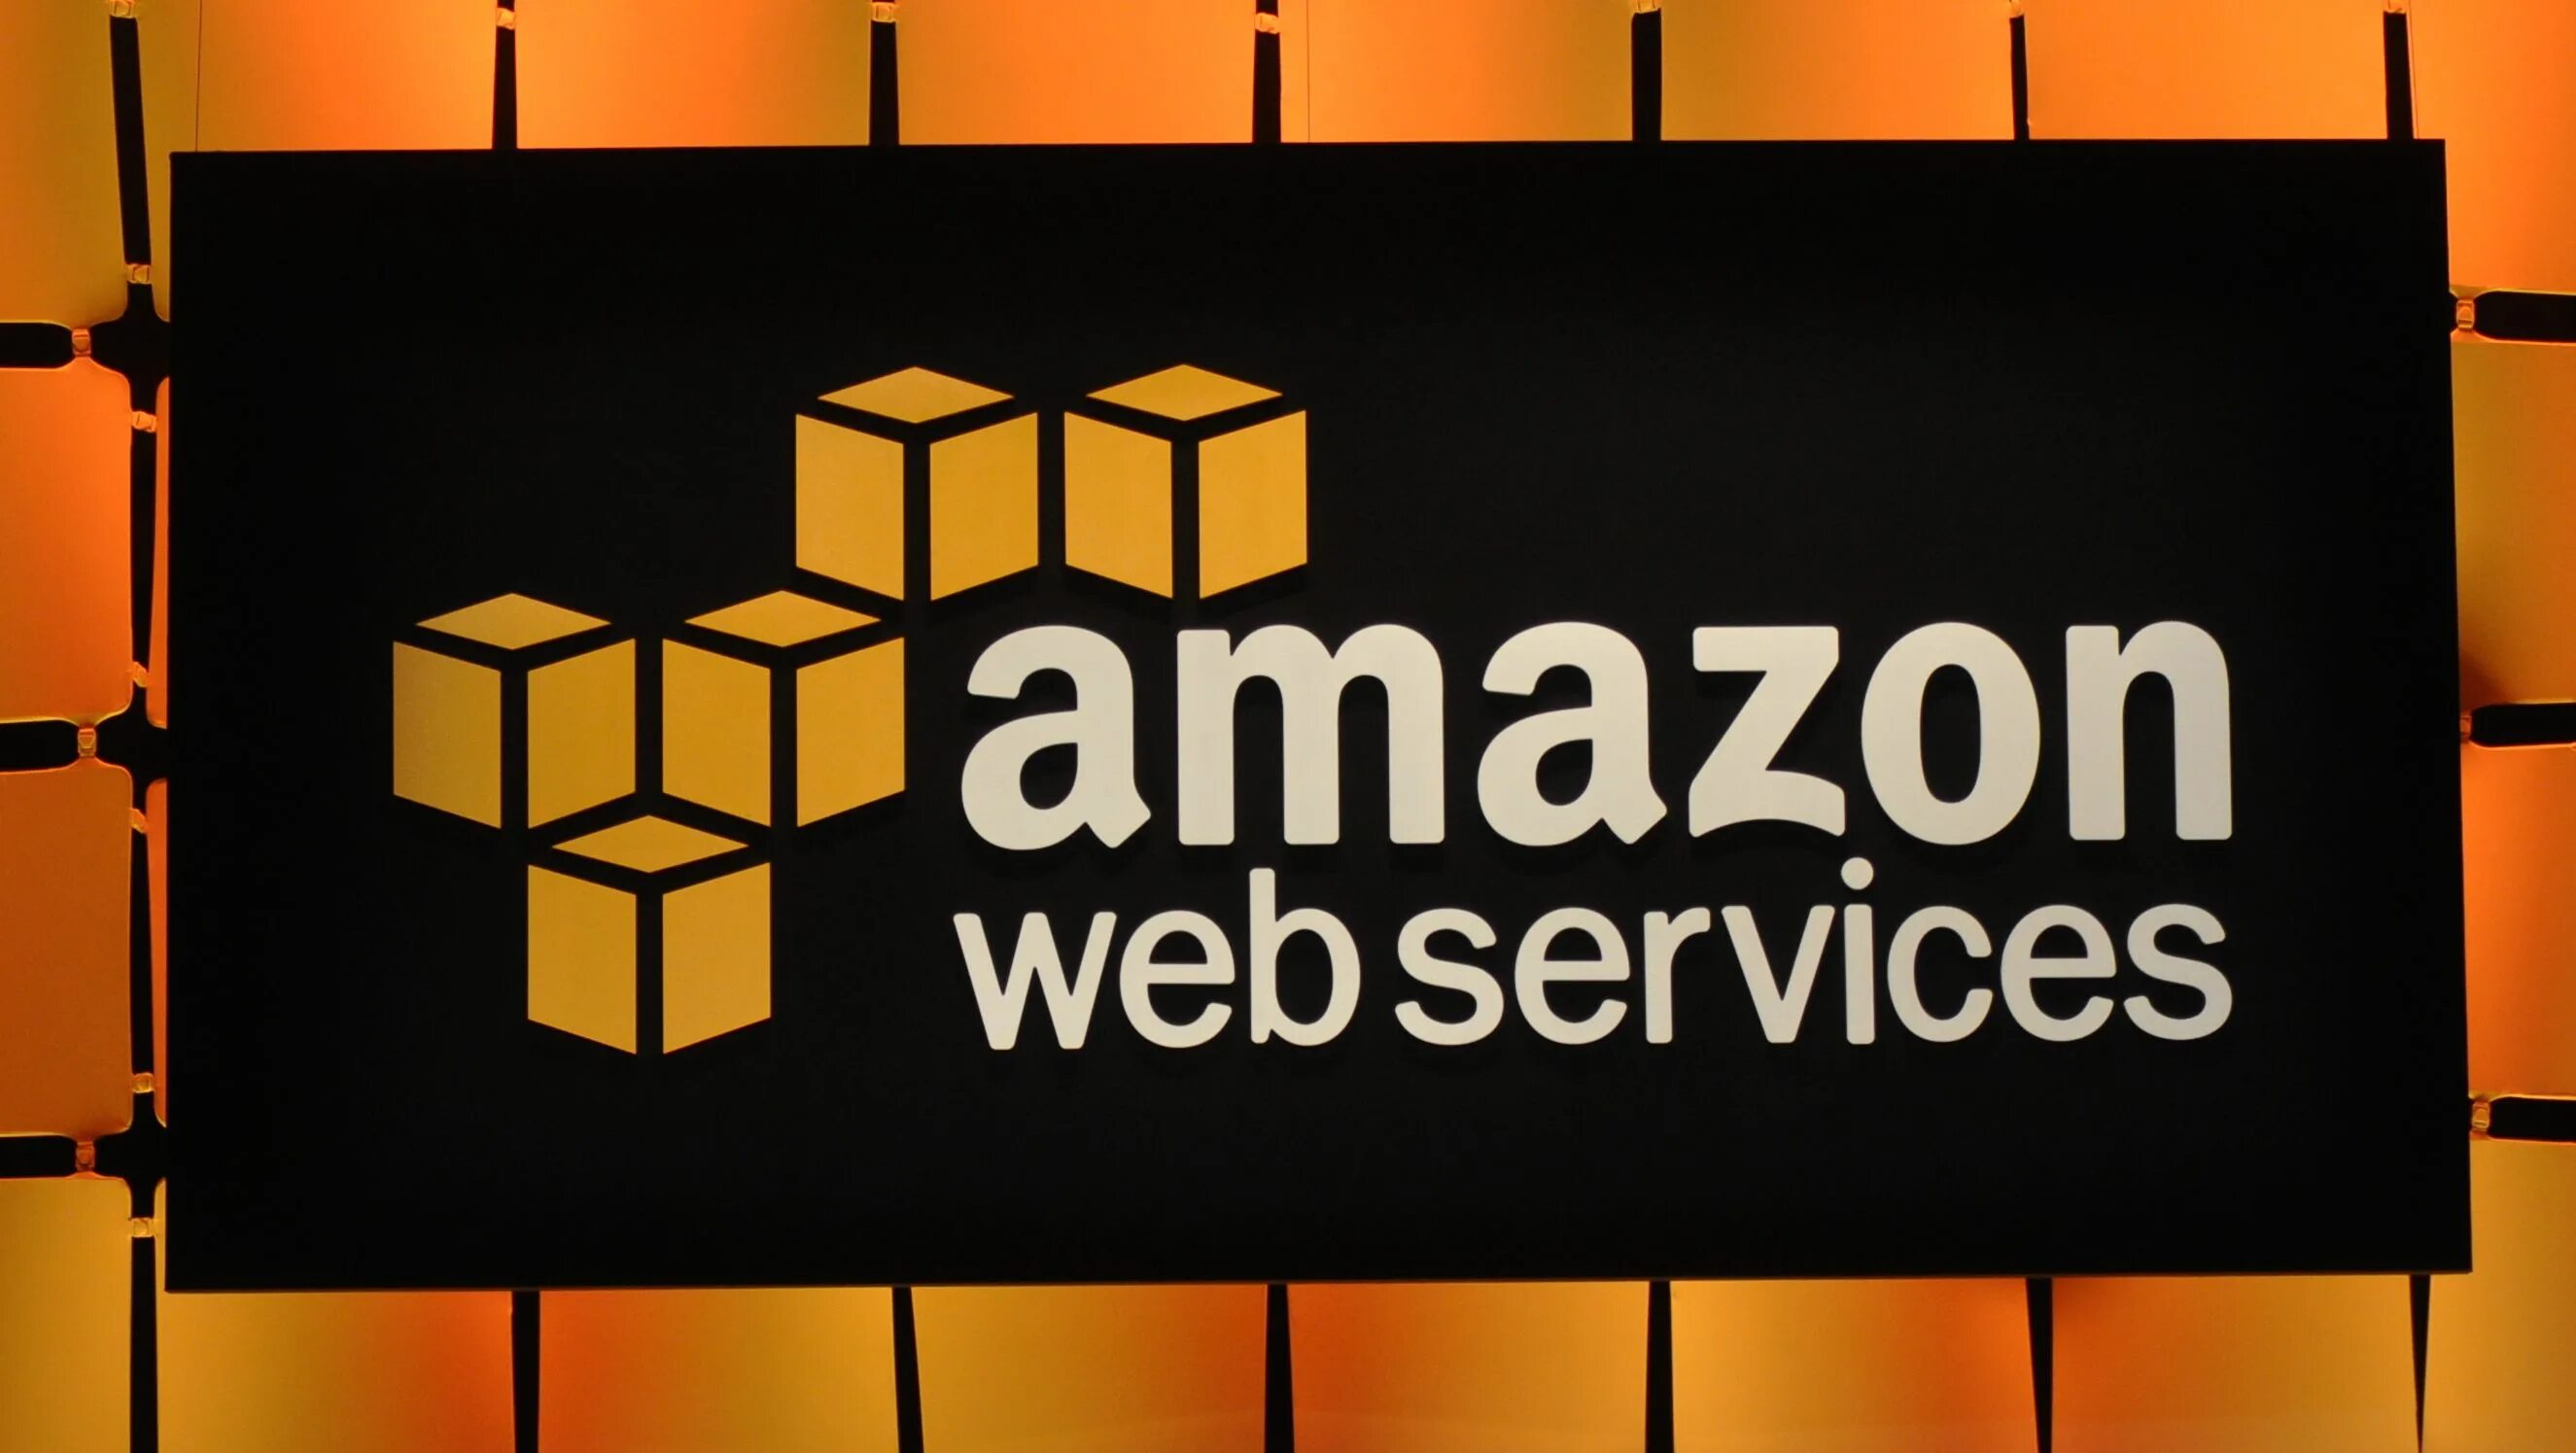 Amazon облачные сервисы. Amazon web services. Amazon web services логотип. Amazon web services (AWS). Амазон сервисы.